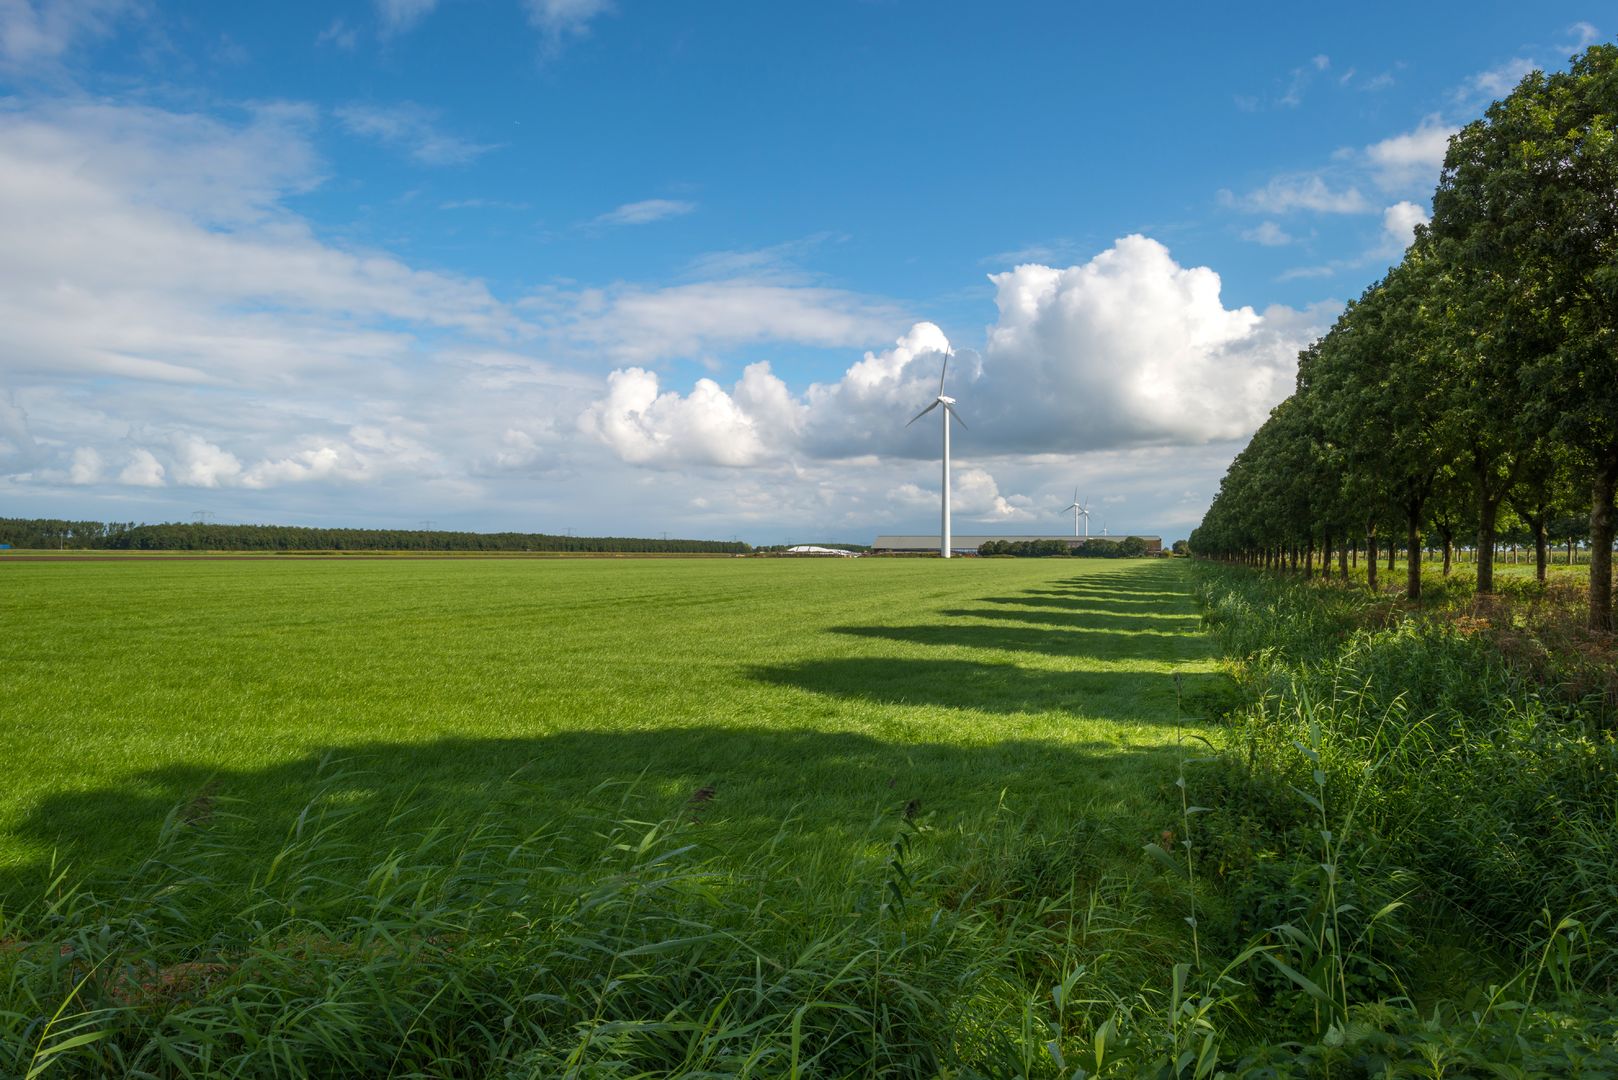 Agrarisch landschap in Flevoland